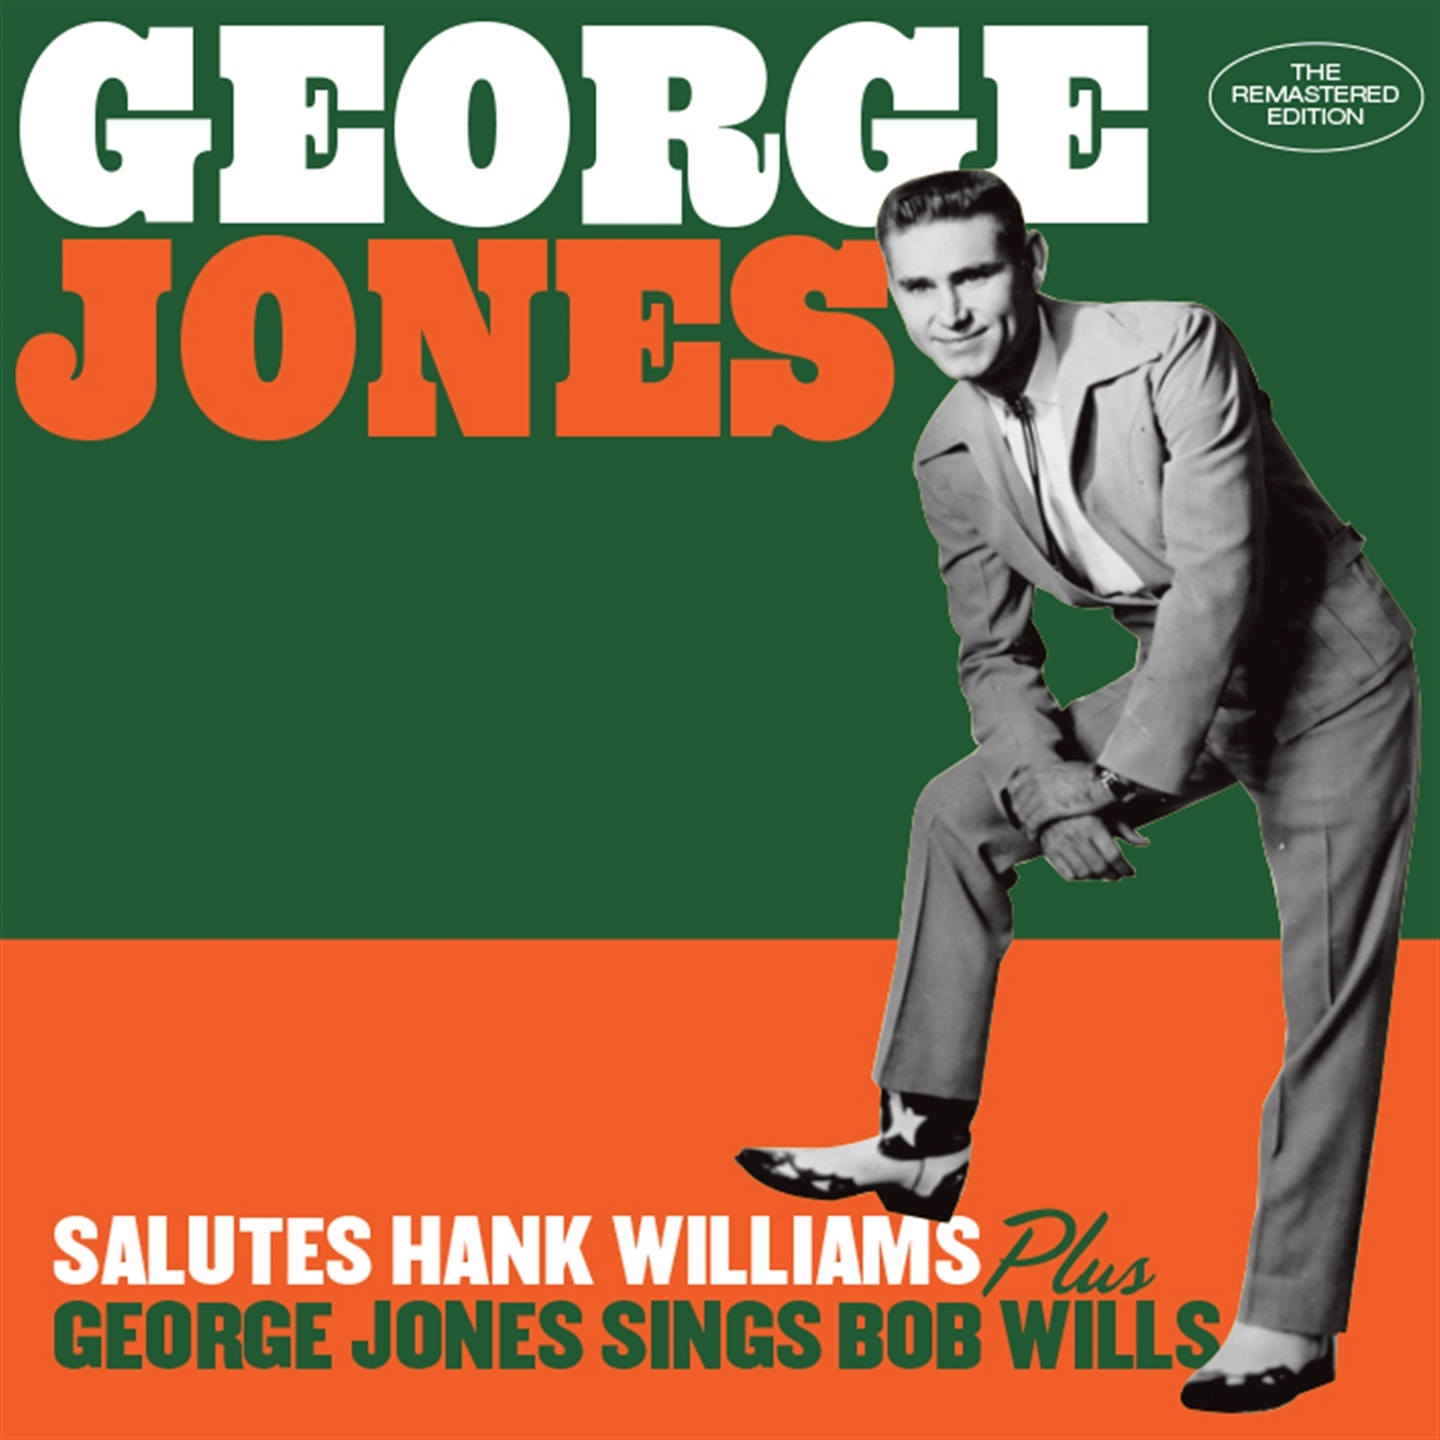 George Jones - Hank Williams Greetings (+ George Jones Sings Bob Wills) - Picture 1 of 1